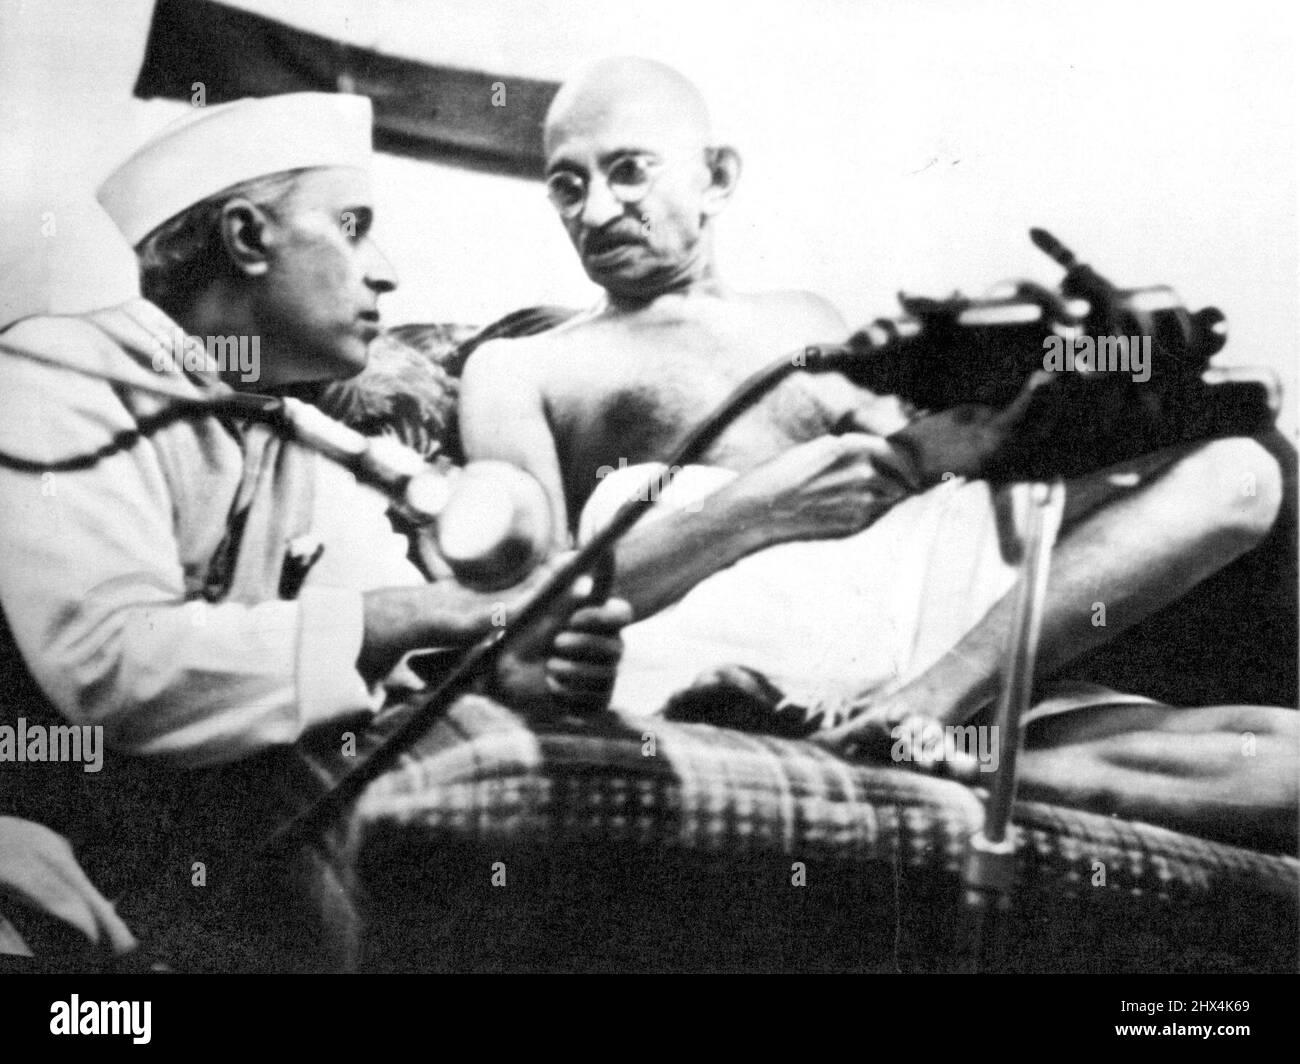 Conférence sur les coussins -- Pandit Jawaharlal Nehru et Mohan Das K. Gandhi, ce dernier confortablement couché sur les coussins, se concertent pendant la session du Congrès de toute l'Inde à Bombay quelques heures avant leur arrestation le 8 août. Gandhi a aujourd'hui 73 ans. Et 2 000 de ses disciples ont marqué son anniversaire en lançant des pierres à la police. 02 octobre 1942. (Photo par AP Wirephoto). Banque D'Images